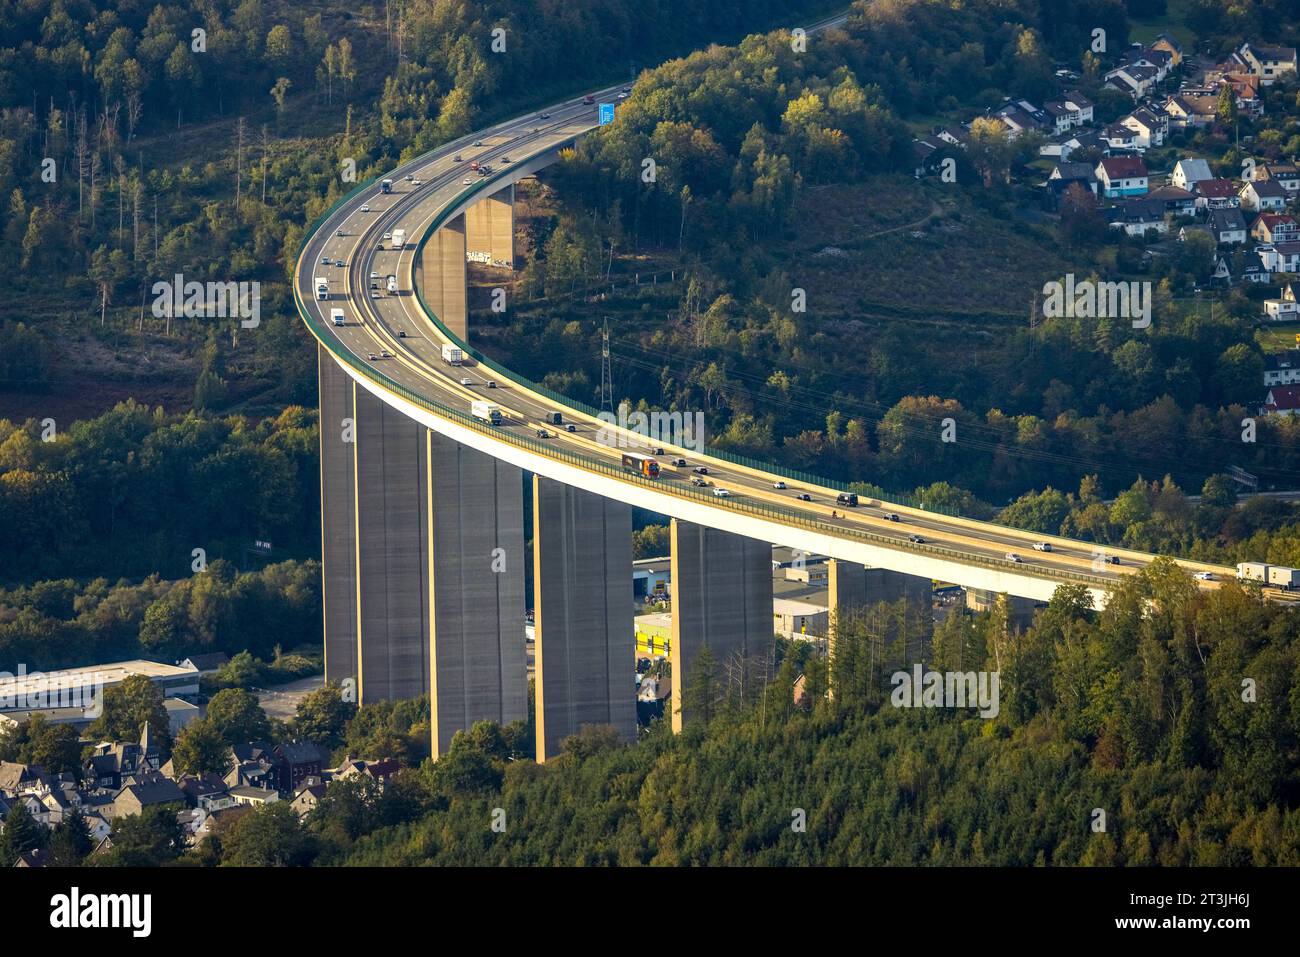 Luftbild, Autobahnbrücke Siegtalbrücke der Autobahn A45 Sauerlandlinie, geplanter Ersatzneubau 2027, Blick auf Siegen, Niederschelden, Siegen, Sauerland, Nordrhein-Westfalen, Deutschland ACHTUNGxMINDESTHONORARx60xEURO *** vue aérienne, pont autoroutier Siegtalbrücke de l'autoroute A45 Sauerlandlinie, remplacement prévu 2027, vue de Siegen, Niederschelden, Siegen, Sauerland, Rhénanie du Nord-Westphalie, Allemagne ATTENTIONXMINDESTHONORARx60xEURO crédit : Imago/Alamy Live News Banque D'Images